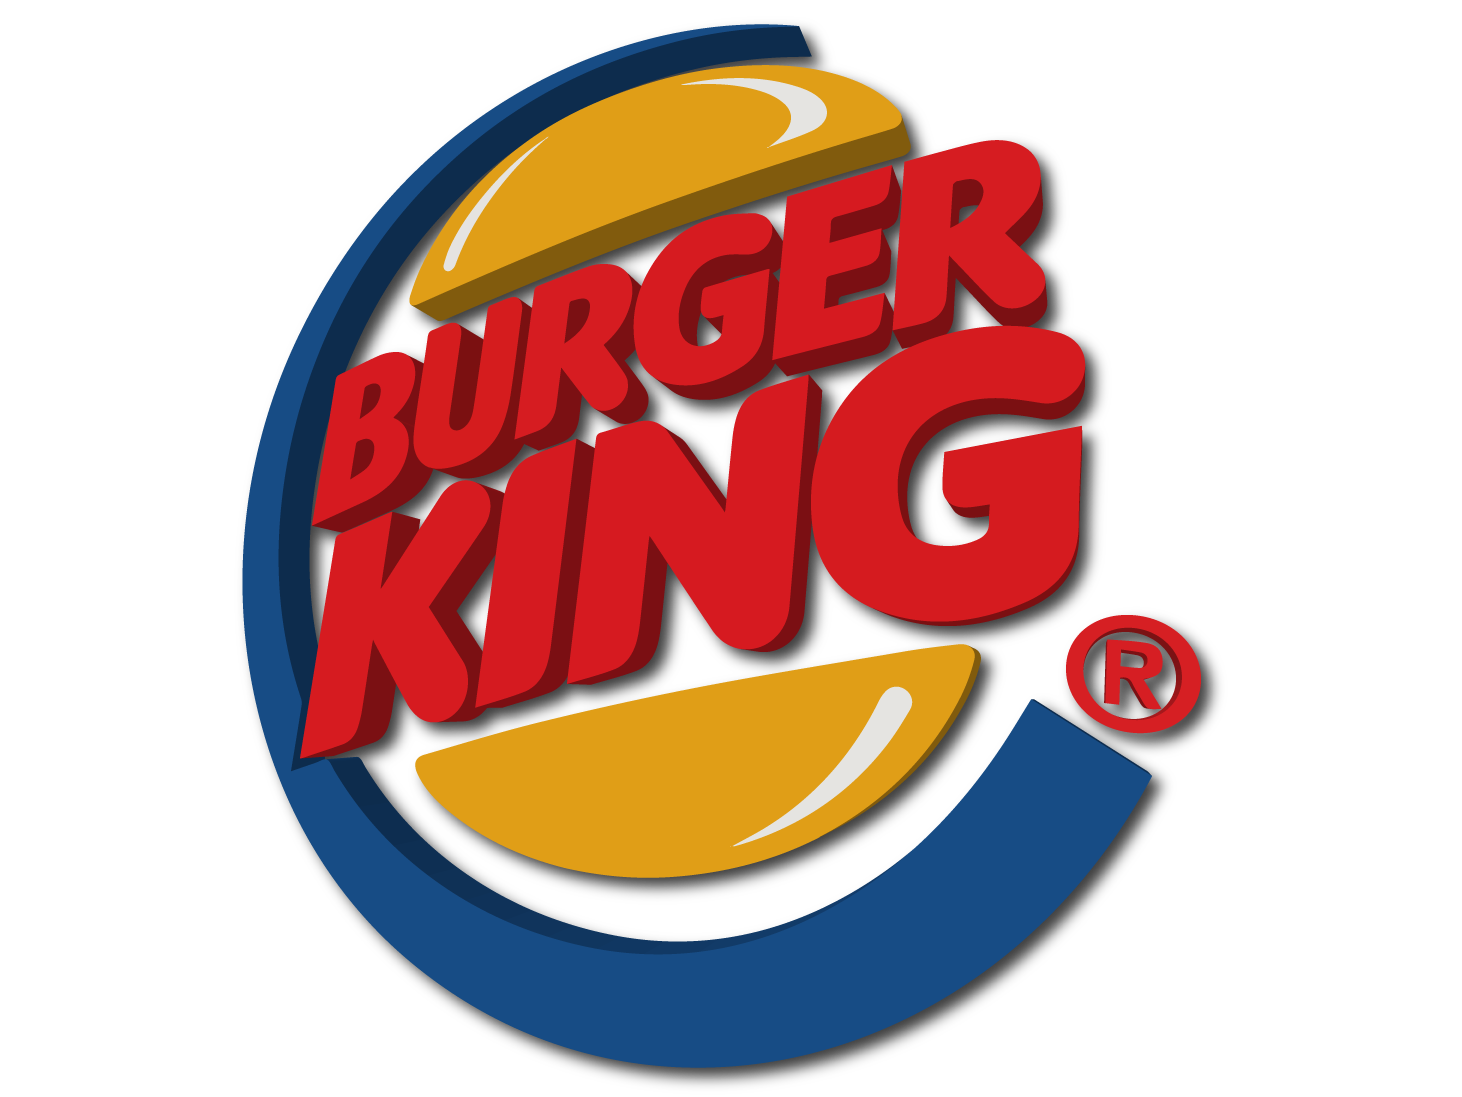 Kfc Hamburger Burger King Log